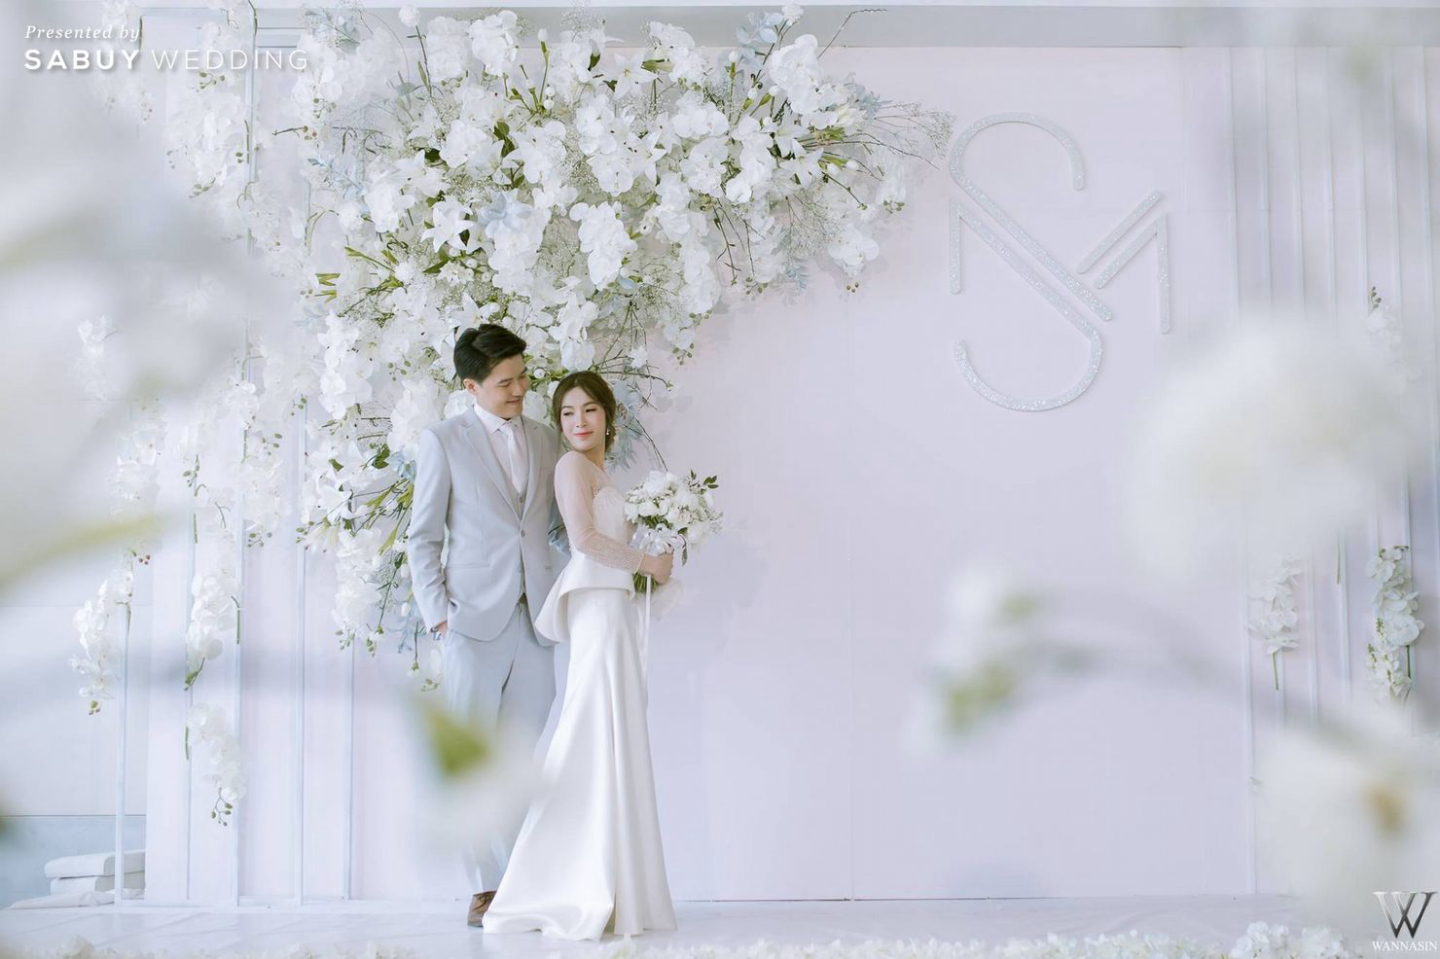 MC BY KERD,The Peninsula Bangkok,งานแต่งงาน,งานหมั้น,พิธีหมั้น,งานแต่งตอนเช้า,เจ้าบ่าว,เจ้าสาว,ดอกไม้เจ้าสาว,ดอกไม้,Backdrop งานแต่ง,ตกแต่งงานแต่ง,จัดดอกไม้งานแต่ง,สถานที่แต่งงาน,สถานที่จัดงานแต่งงาน,โรงแรม MC BY KERD ครบสูตรพิธีหมั้นไทยจีน ทุกซีนมีแต่รอยยิ้ม